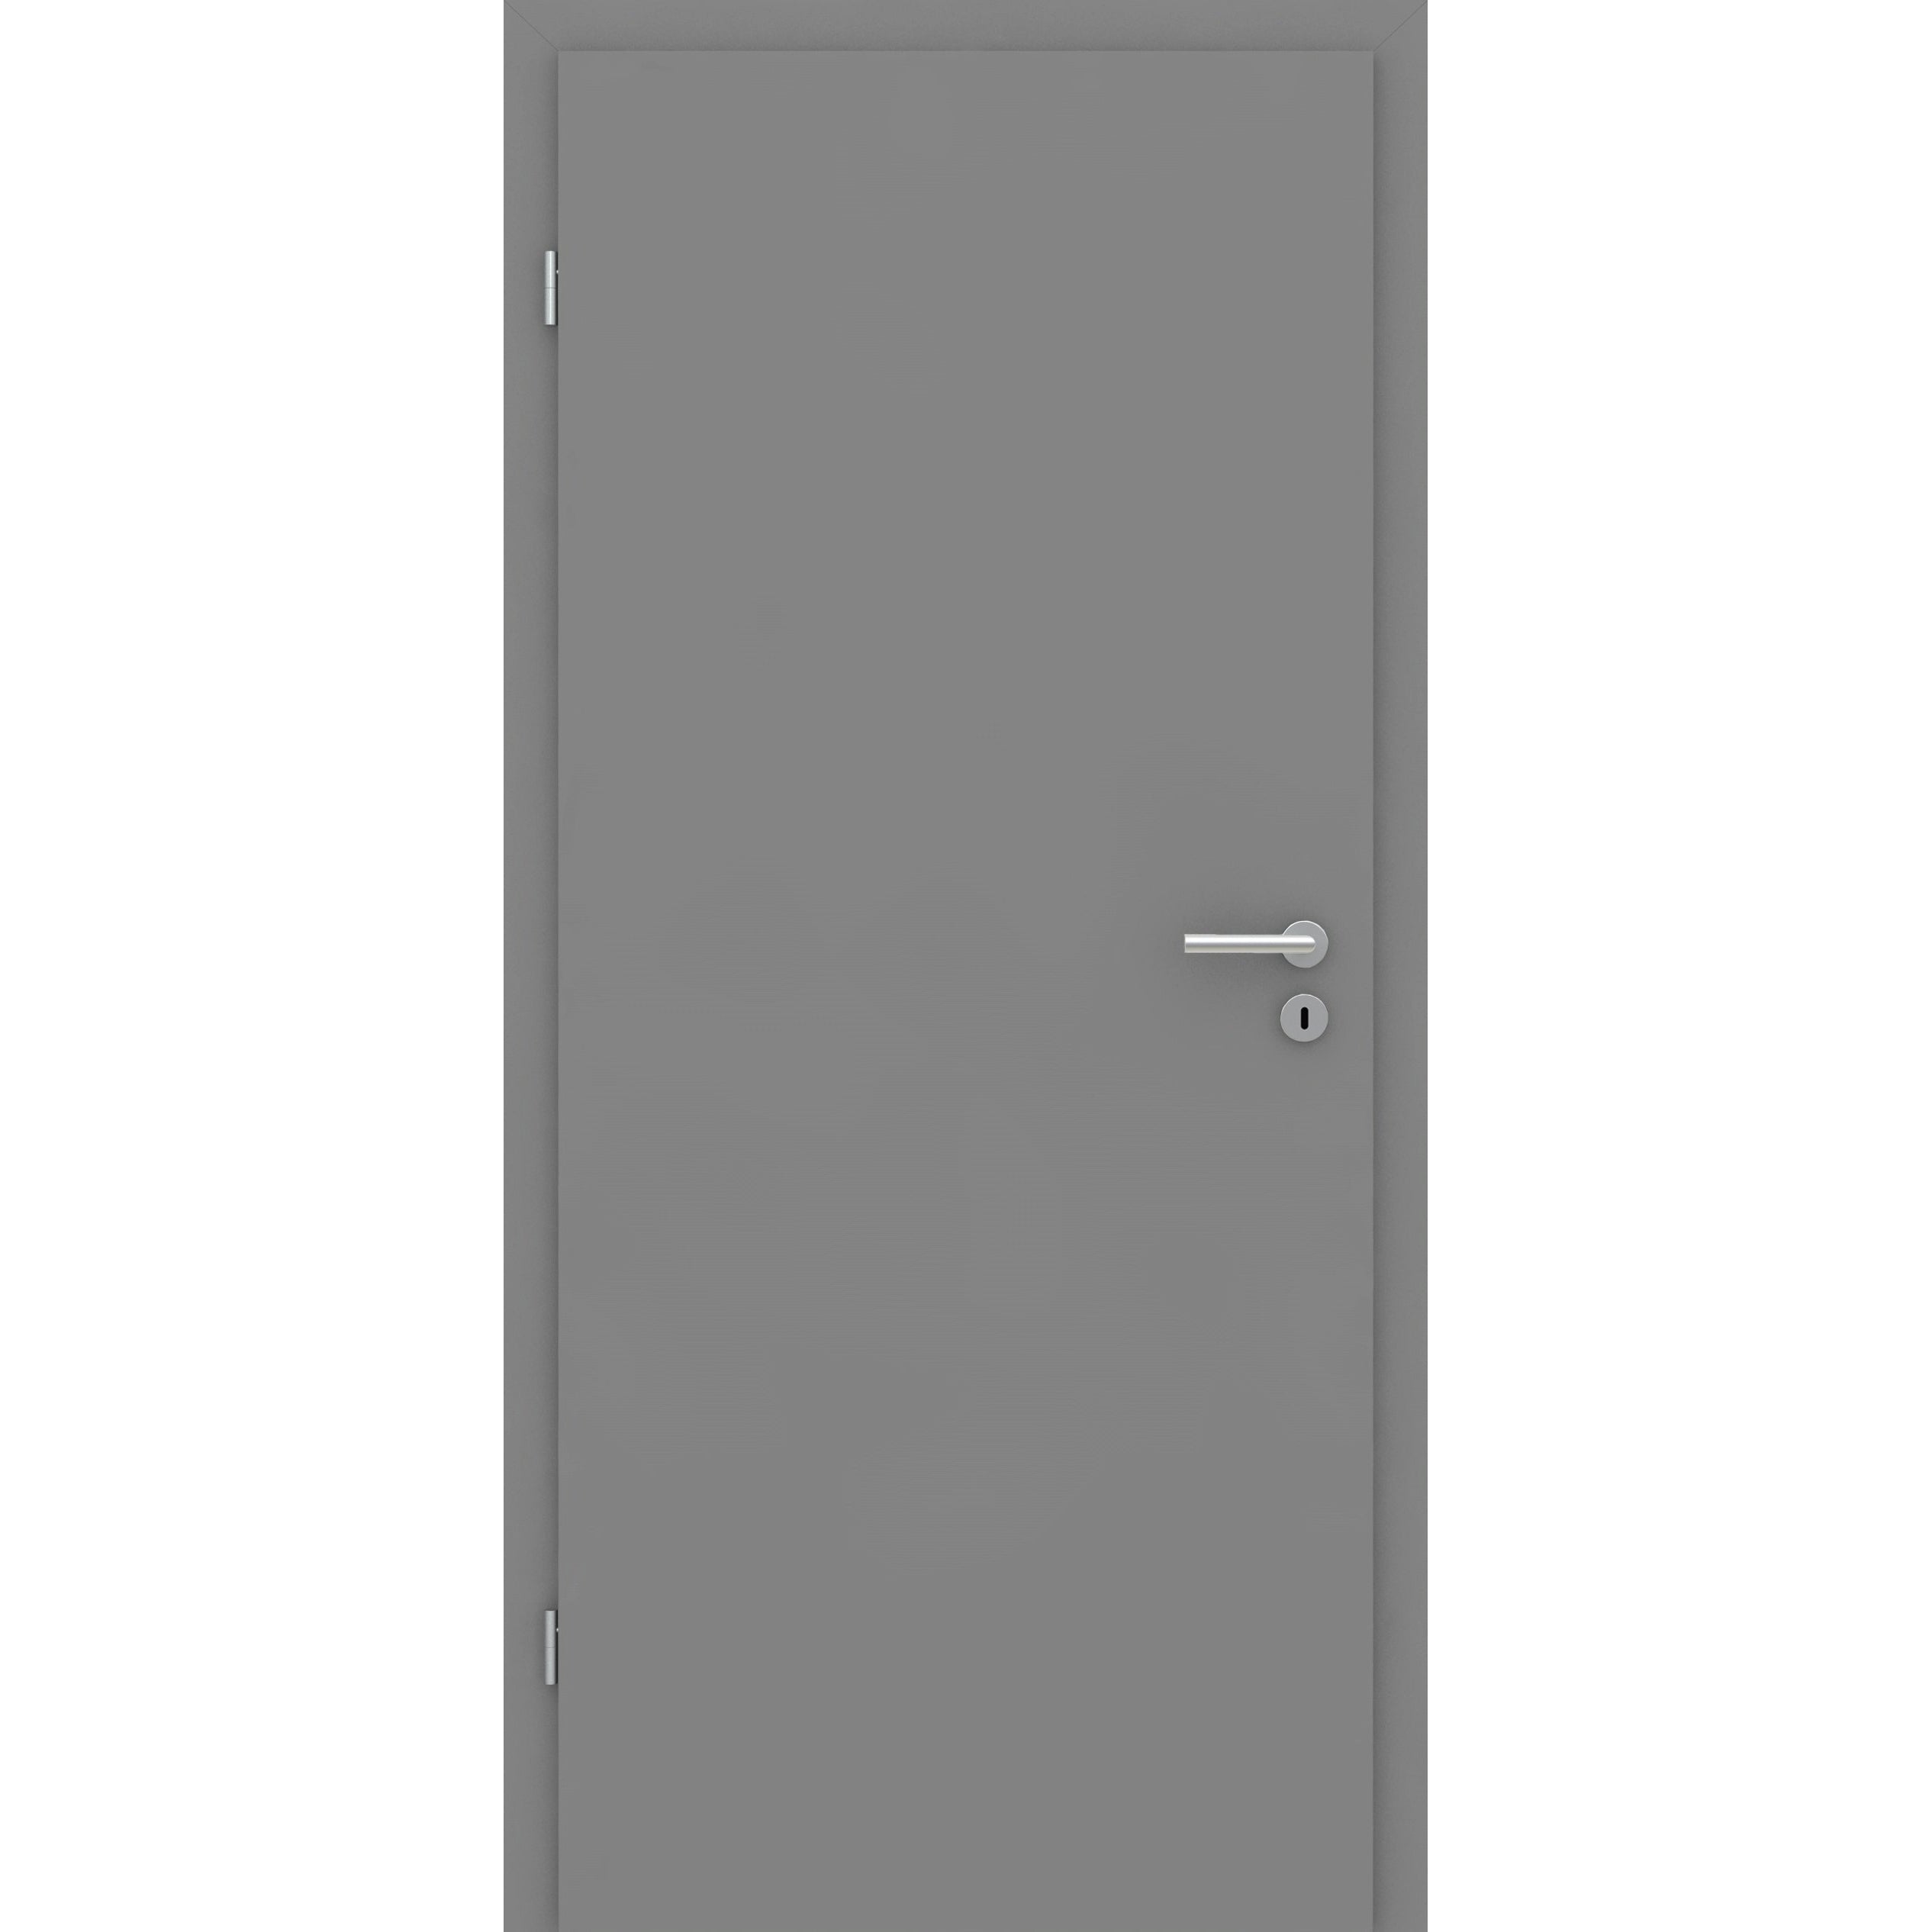 Wohnungseingangstür mit Zarge grau glatt Designkante SK3 / KK3